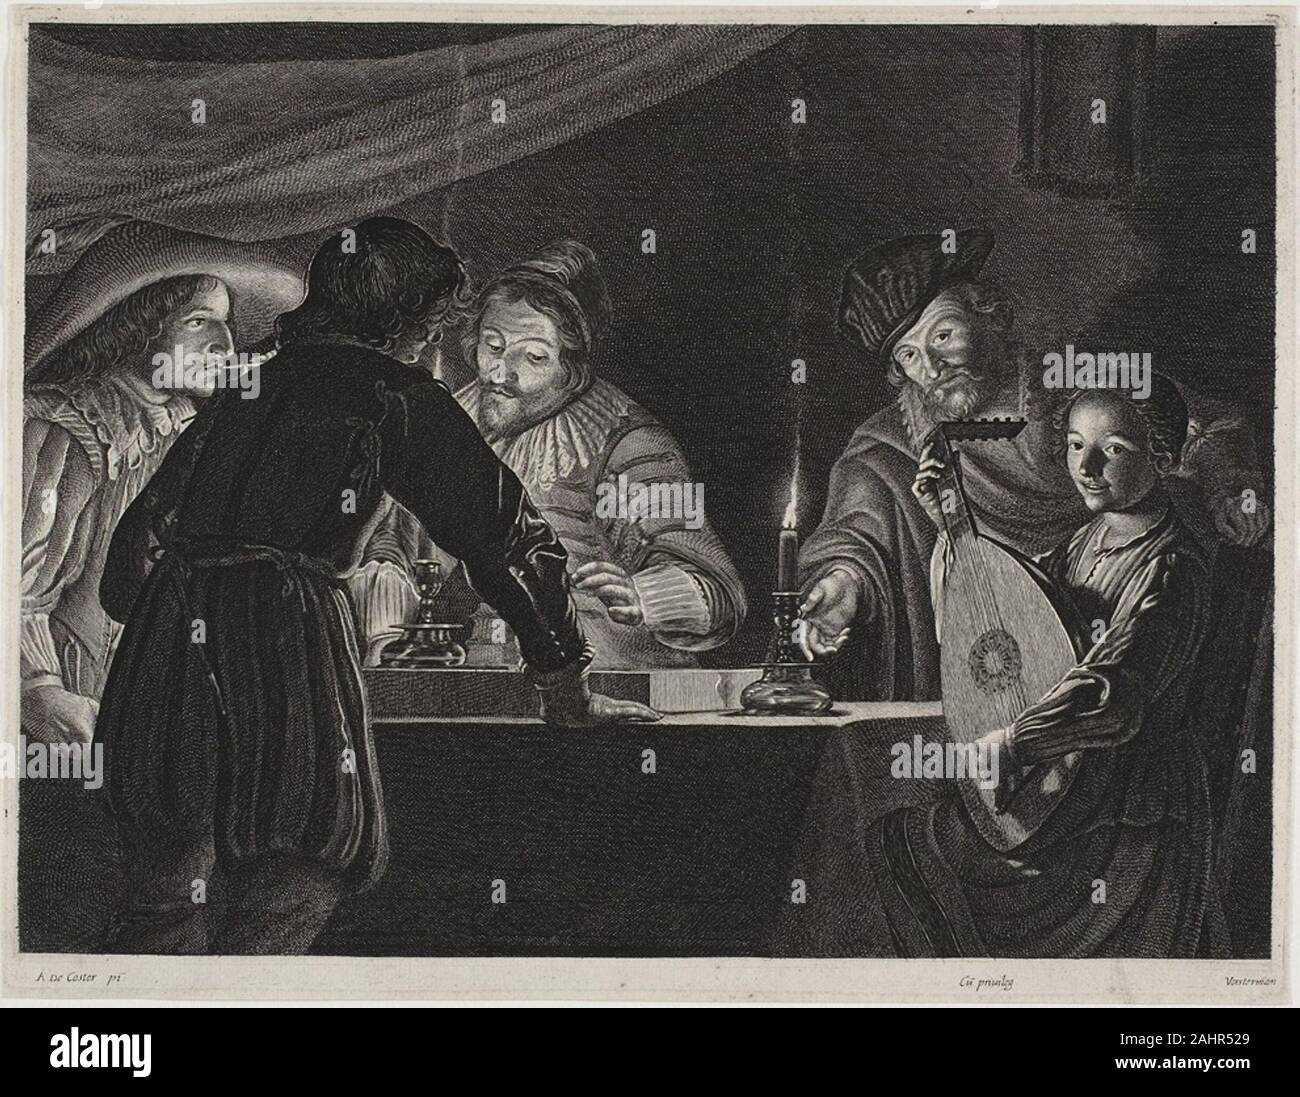 (1972) by Emil Lucas. Les joueurs de backgammon. 1625-1635. La Flandre. Gravure sur papier ivoire Adam de Coster était un peintre de scènes de nuit éclairé à Anvers vers 1630, environ le même temps que la gravure était Louis Emil Lucas fonctionne après ses contemporains populaires dans la même ville. Un étudiant de Peter Paul Rubens (1972) by employées, un style qui était à l'origine similaire à celui de la Communauté flamande, maître jusqu'à une dispute avec Rubens et après voyage en Angleterre provoqué pour créer plus forts, plus stylisés, Caravaggesque gravures telles que les joueurs de backgammon. Clairement influencé Banque D'Images